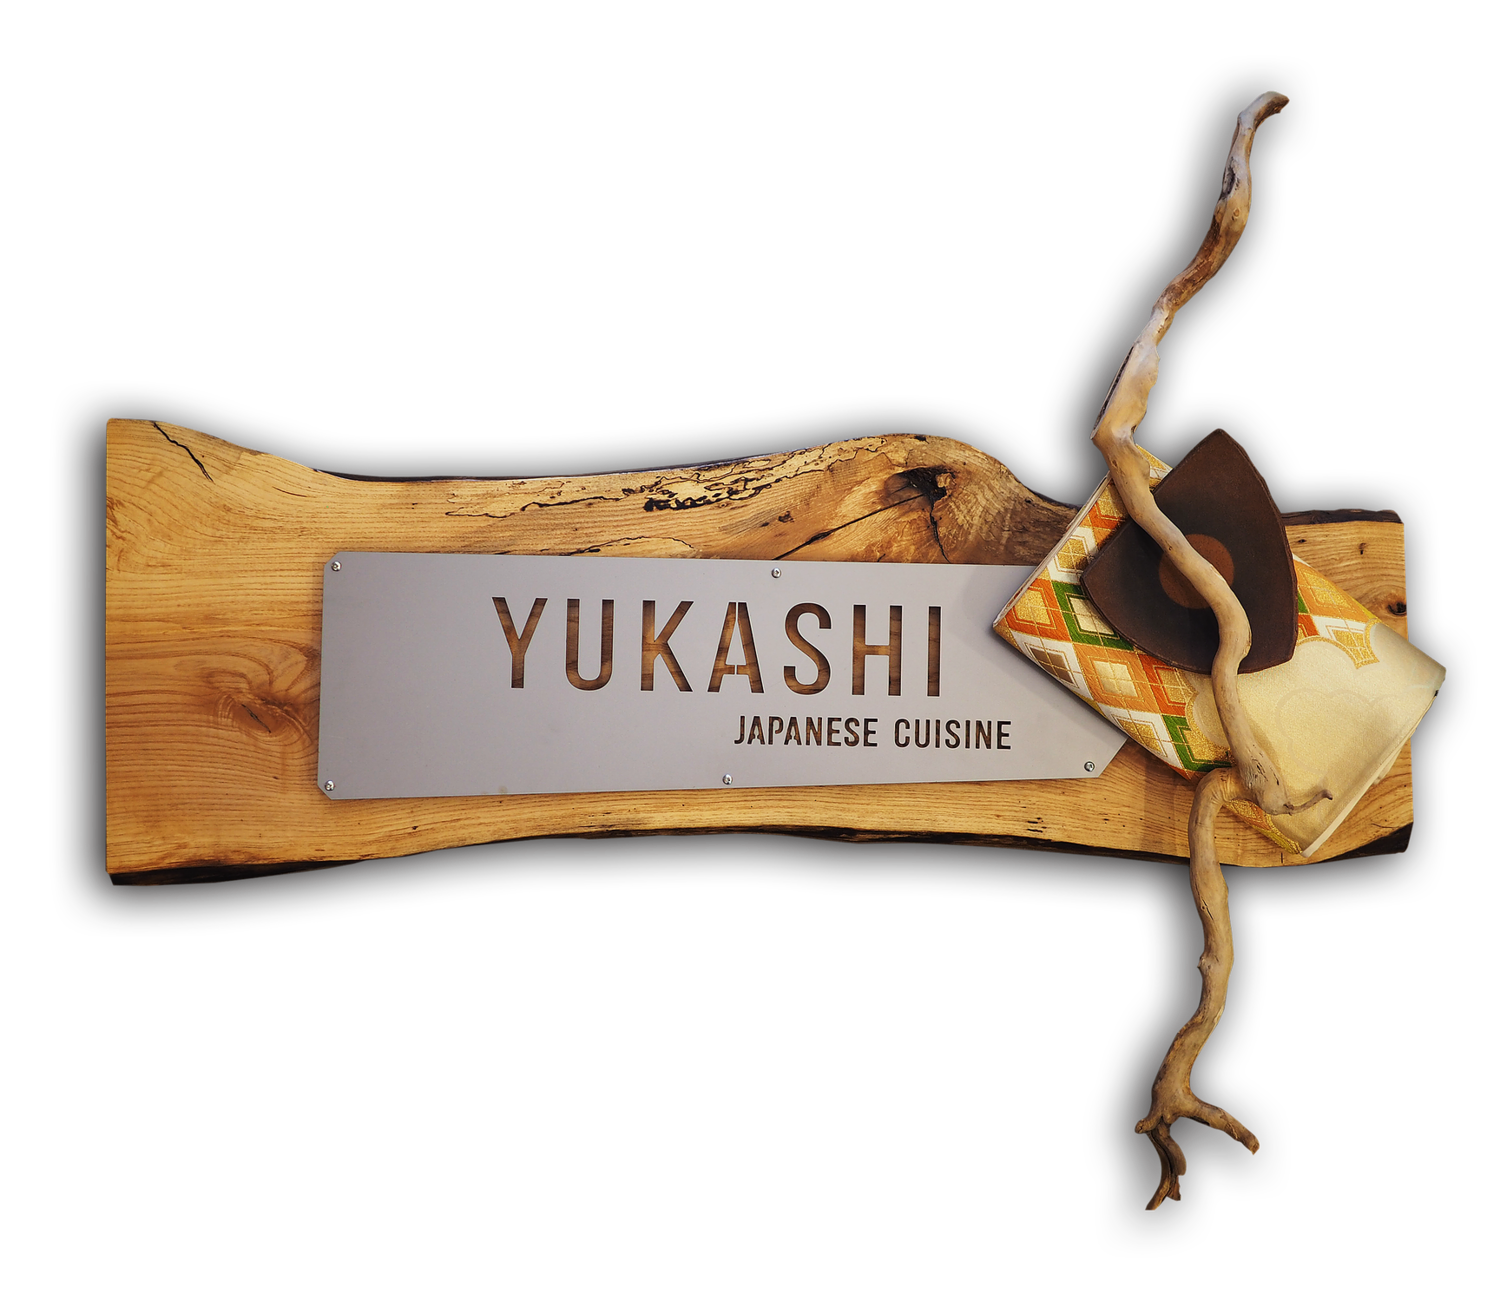 Yukashi